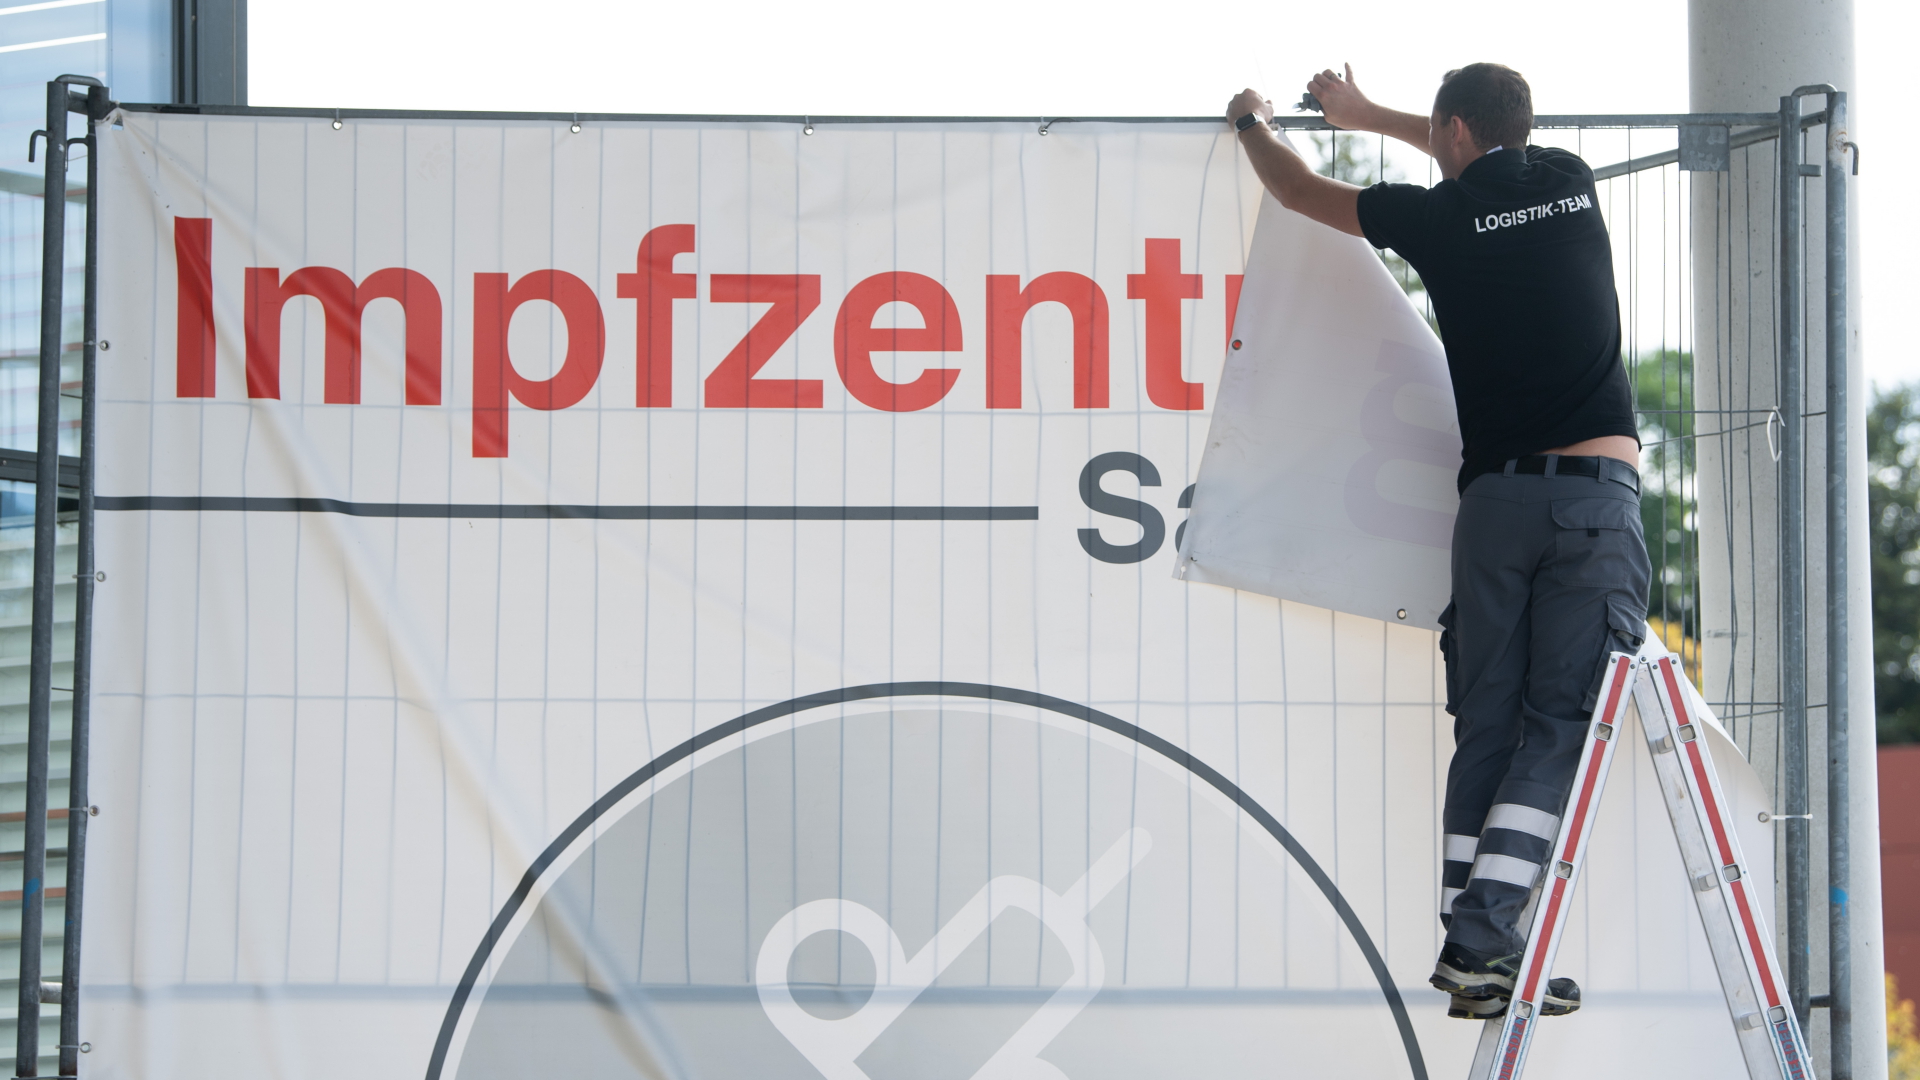 Ein Banner mit der Aufschrift "Impfzentrum Sachsen" wird von einem Bauzaun entfernt